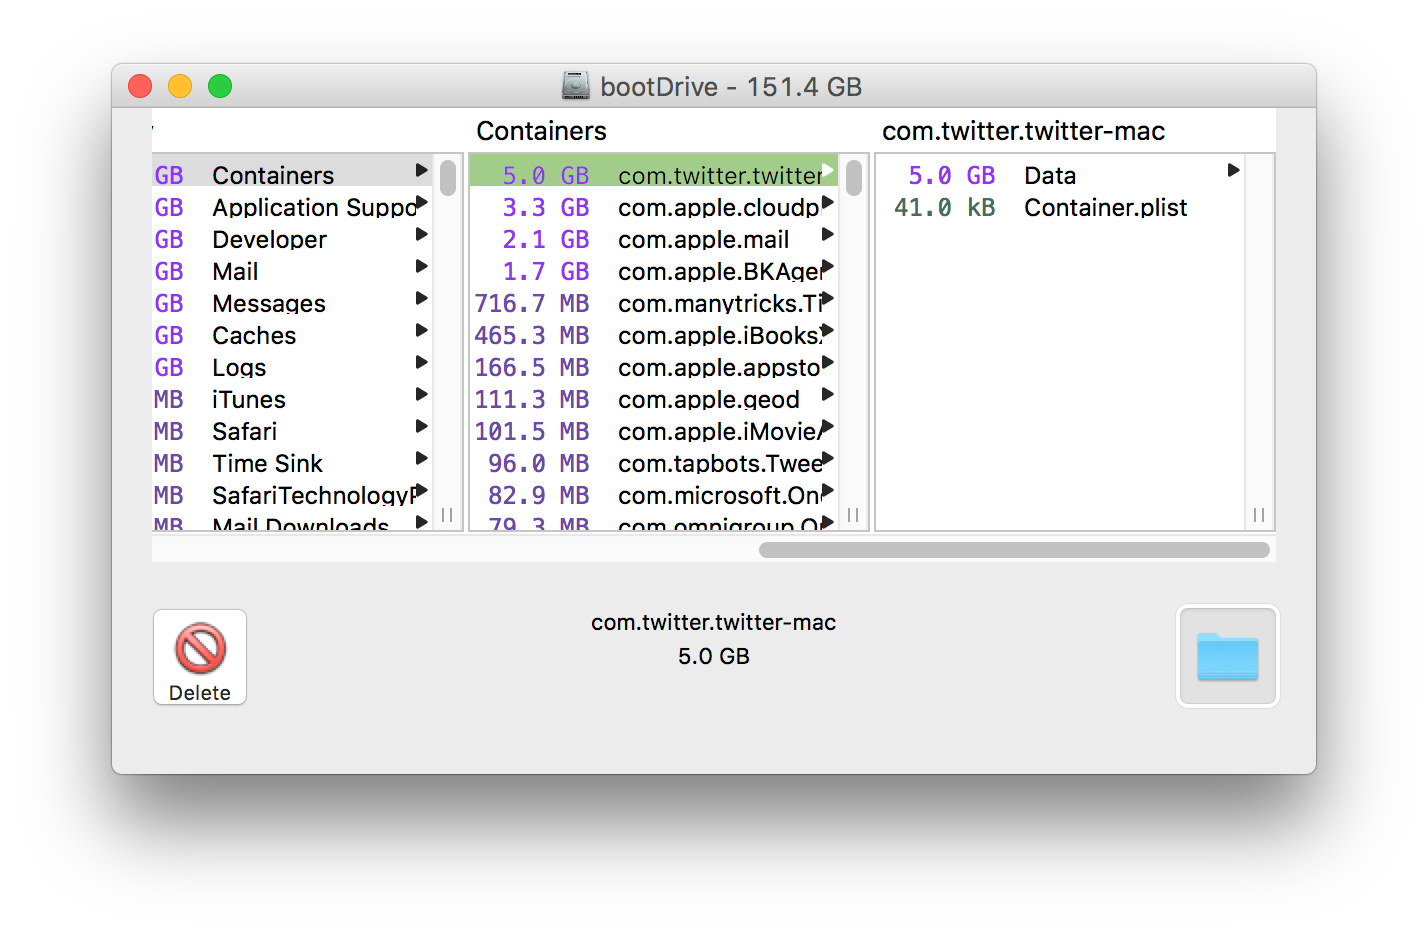 omnidisksweeper download mac